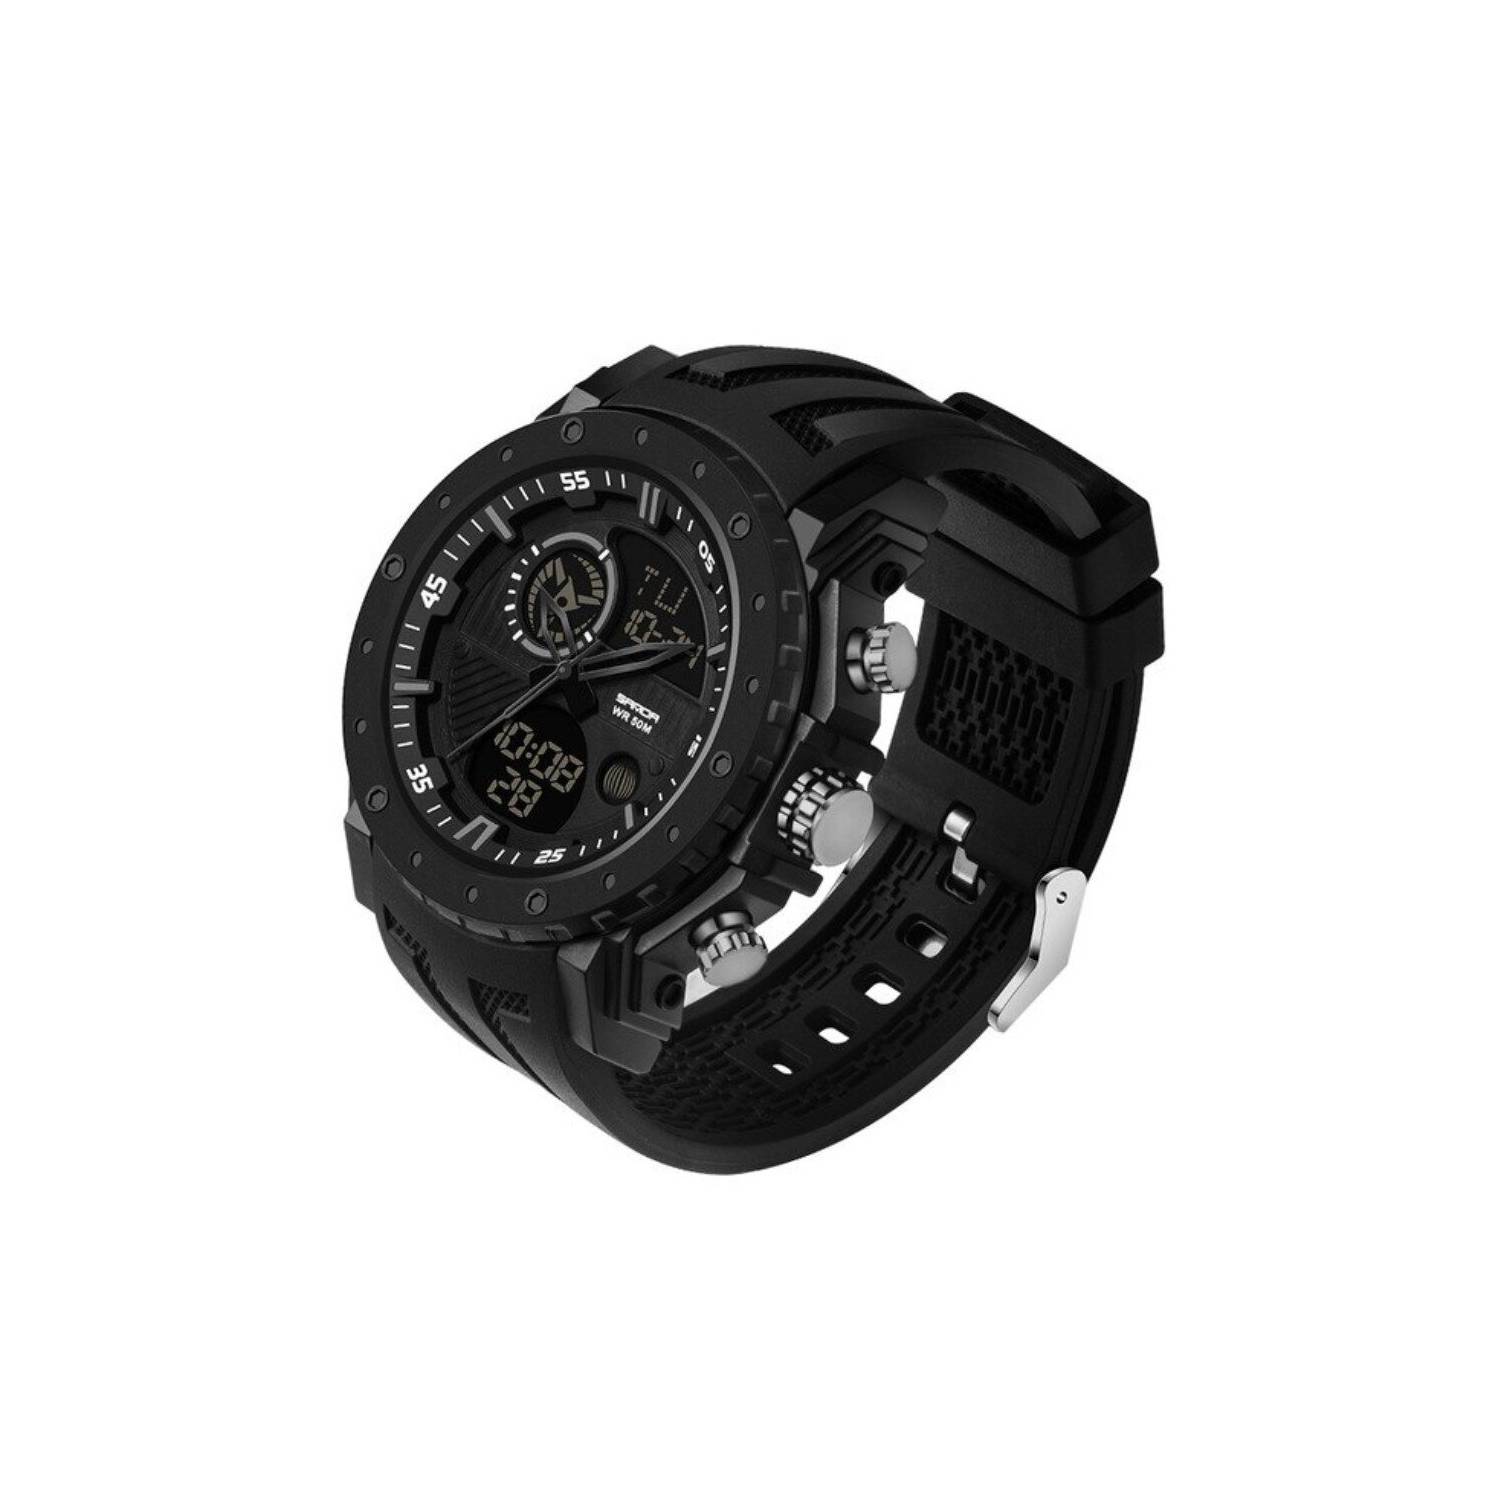 Reloj Hombre Deportivo SANDA 6030 Negro Digital-Análogo